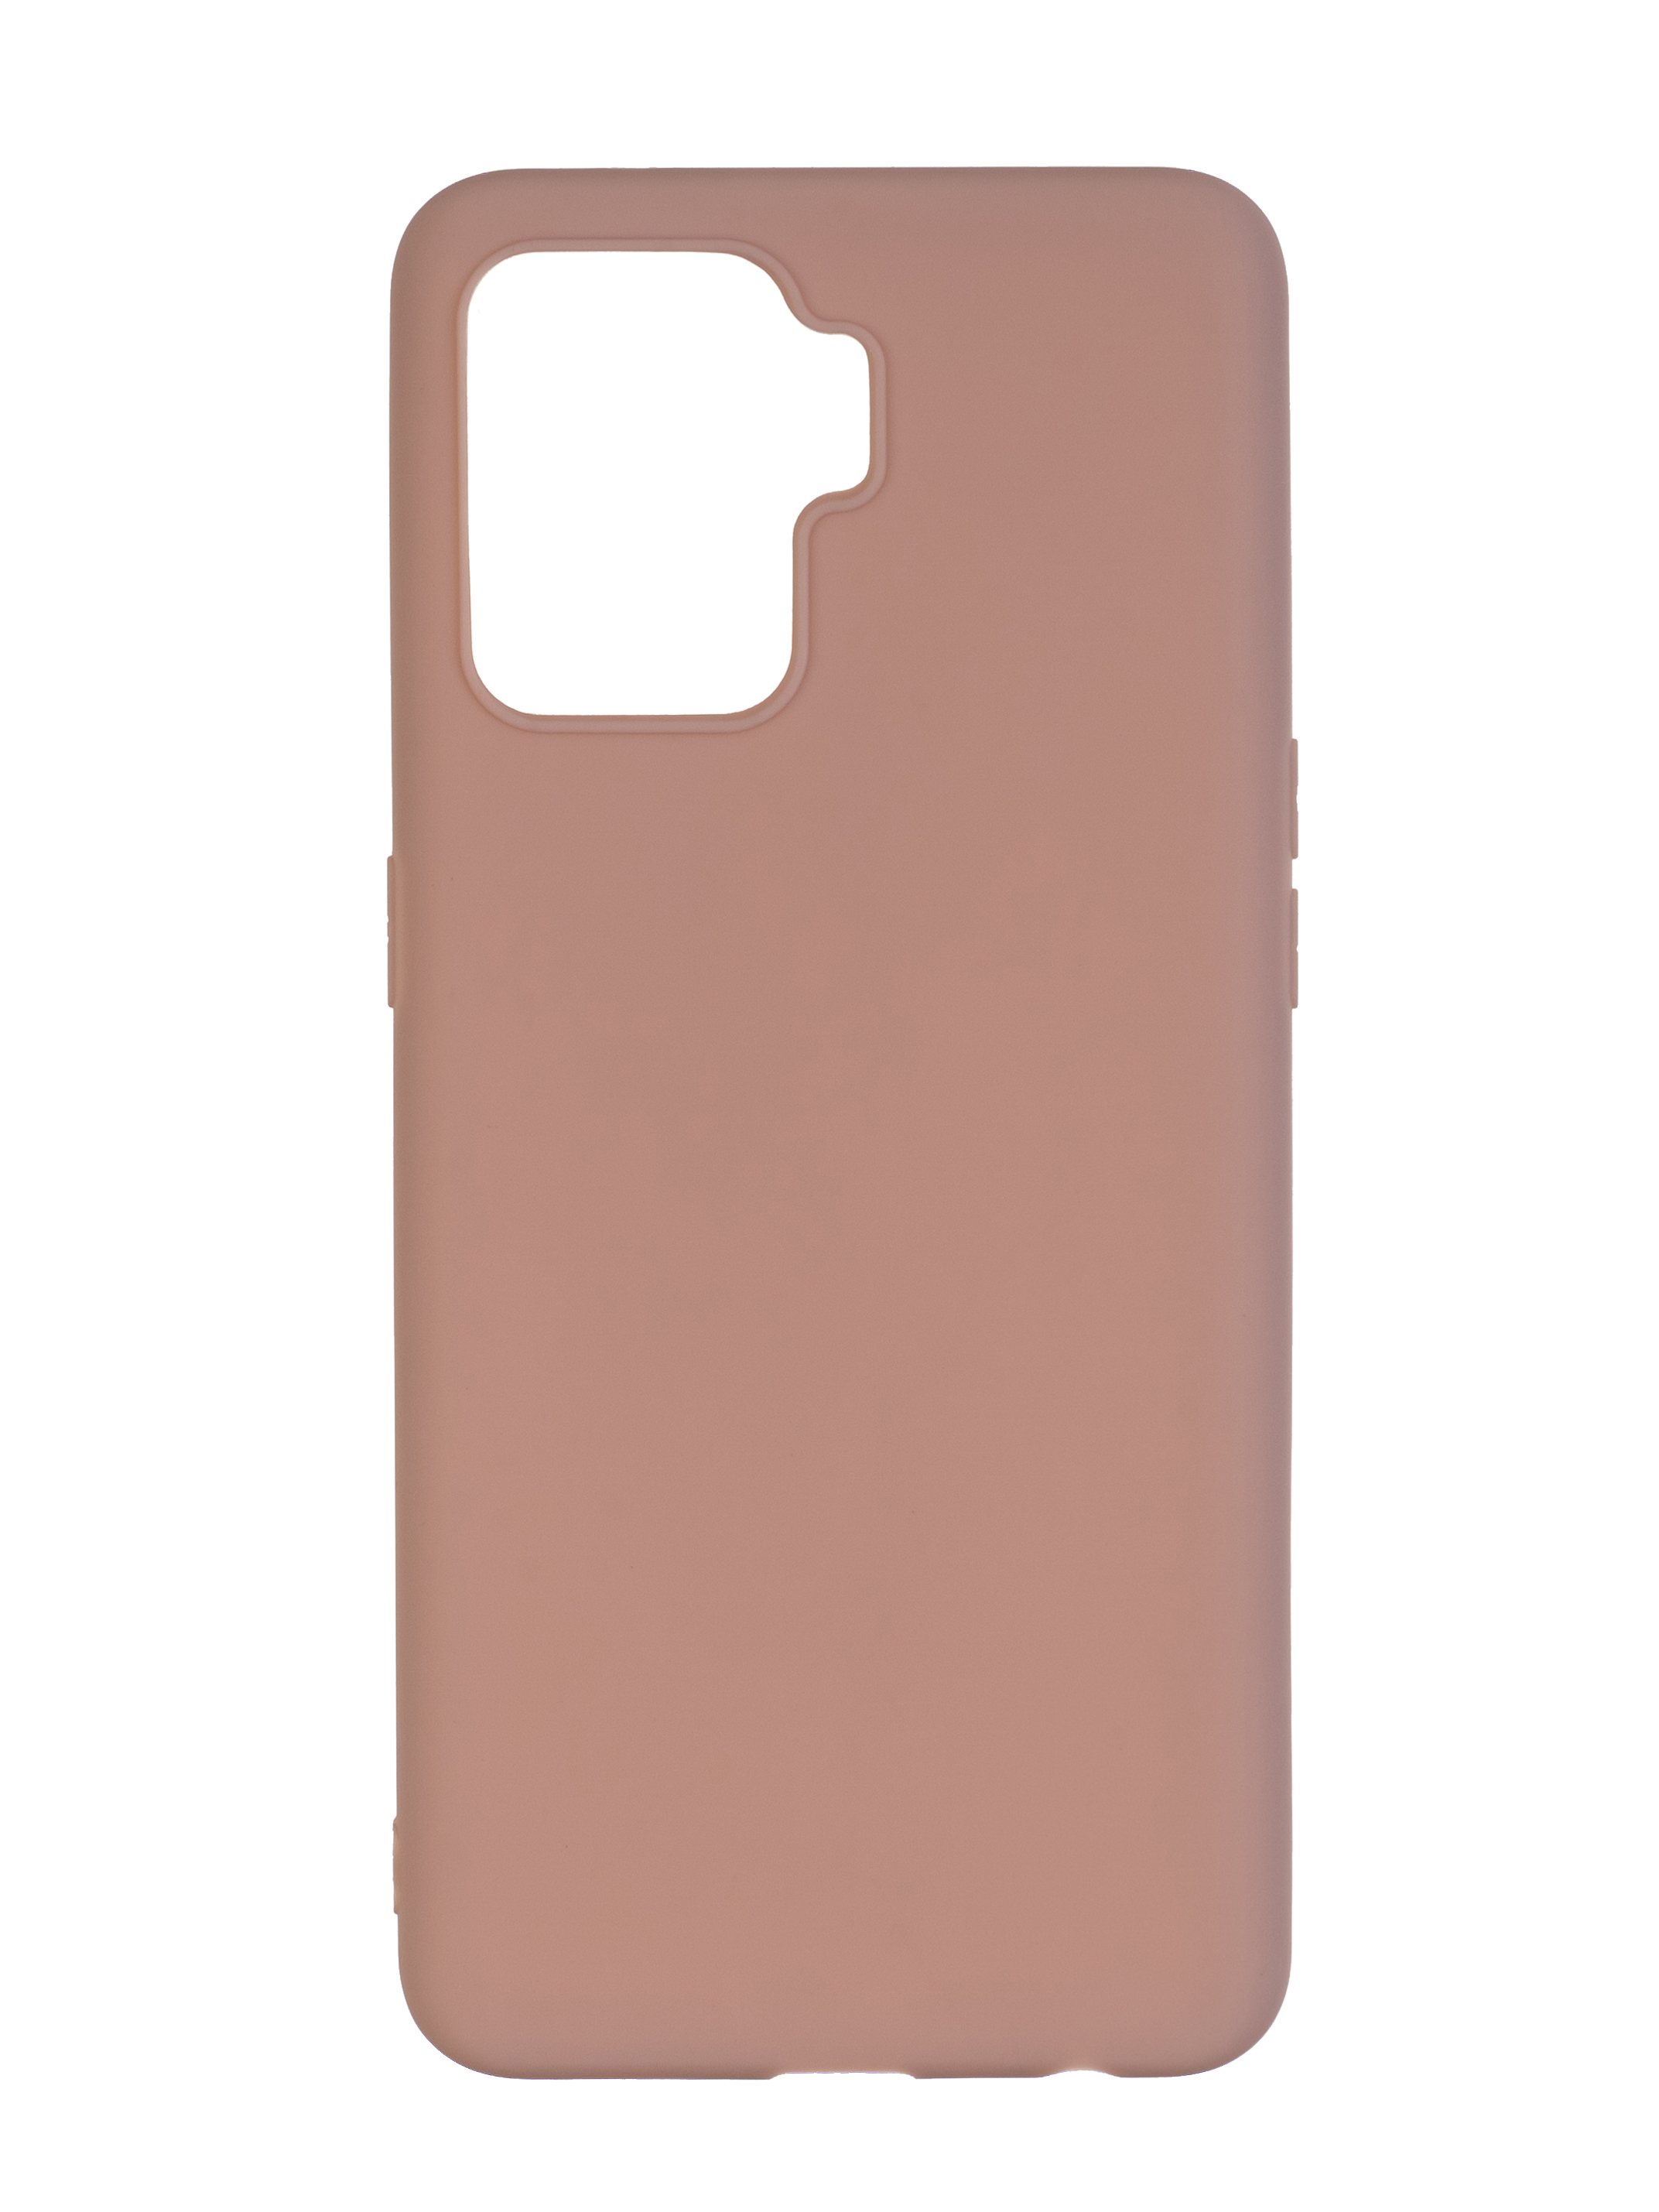 Розовый чехол для телефона. Iphone 13 Pro Max розовый. Silicone Case iphone 11 Pro Max розовый. Силиконовый чехол для iphone 11 Pro Max. Ультратонкий чехол для iphone 12.